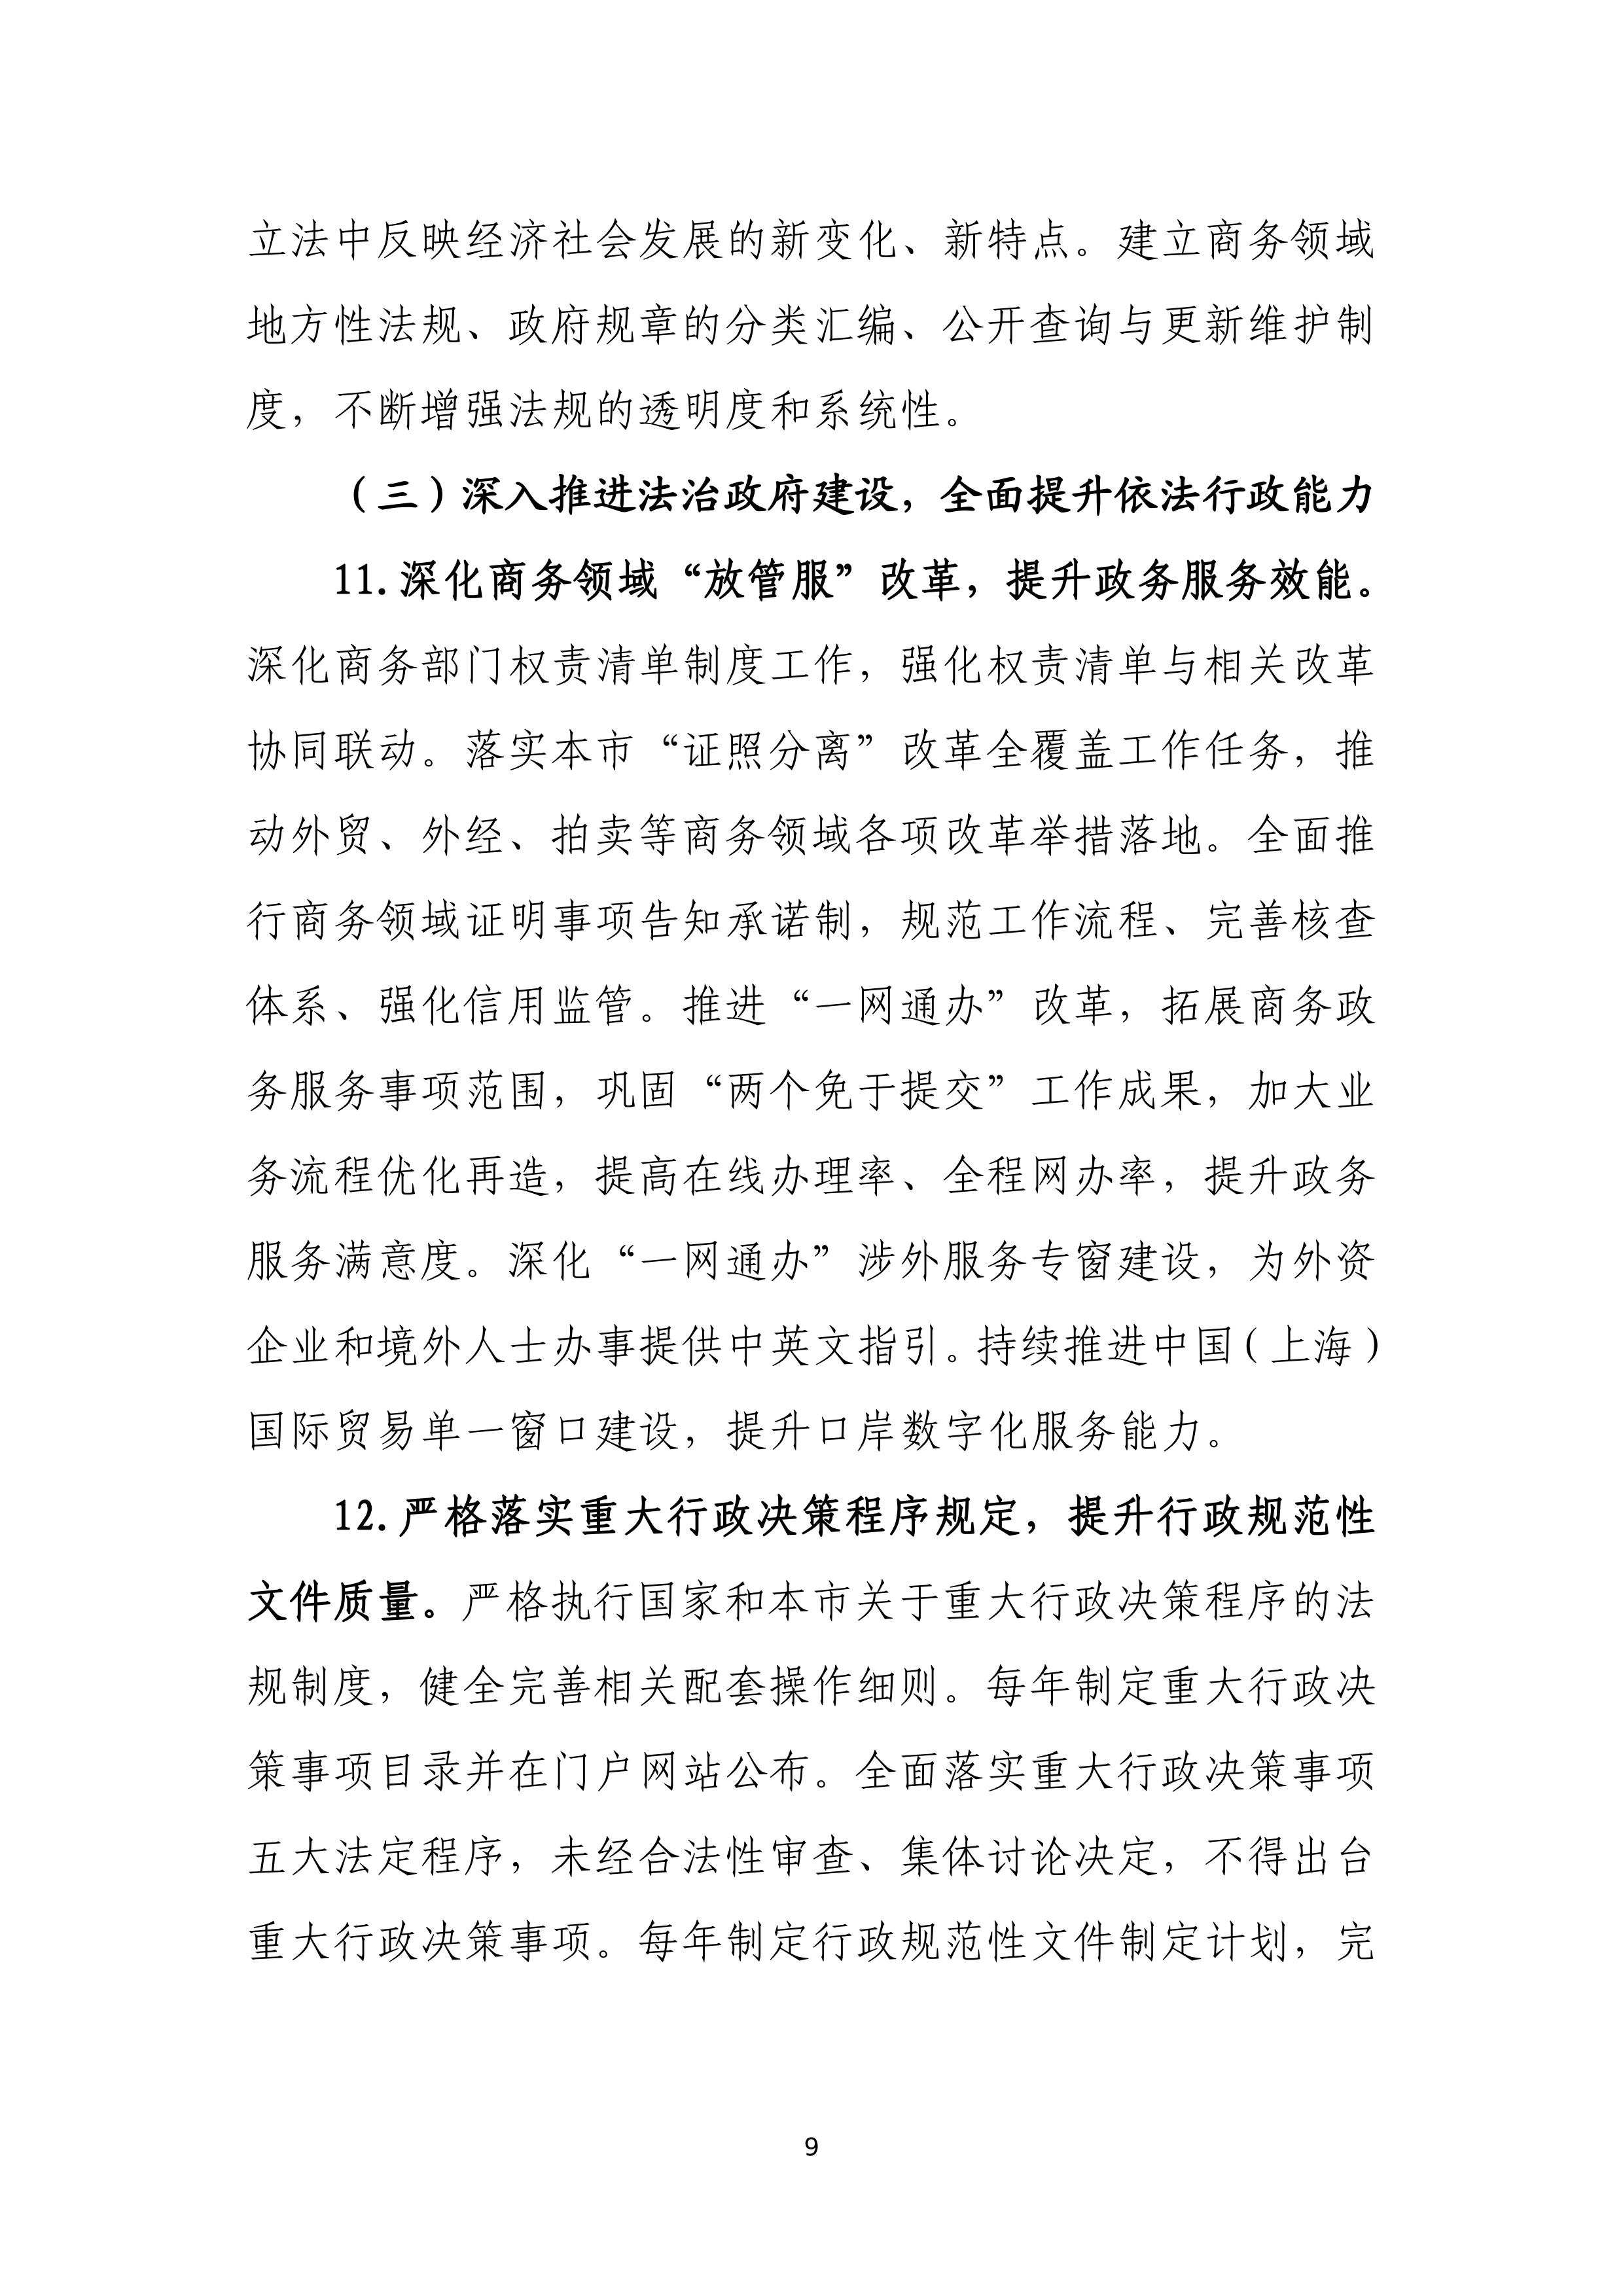 “十四五”时期上海商务法治建设规划_09.jpg